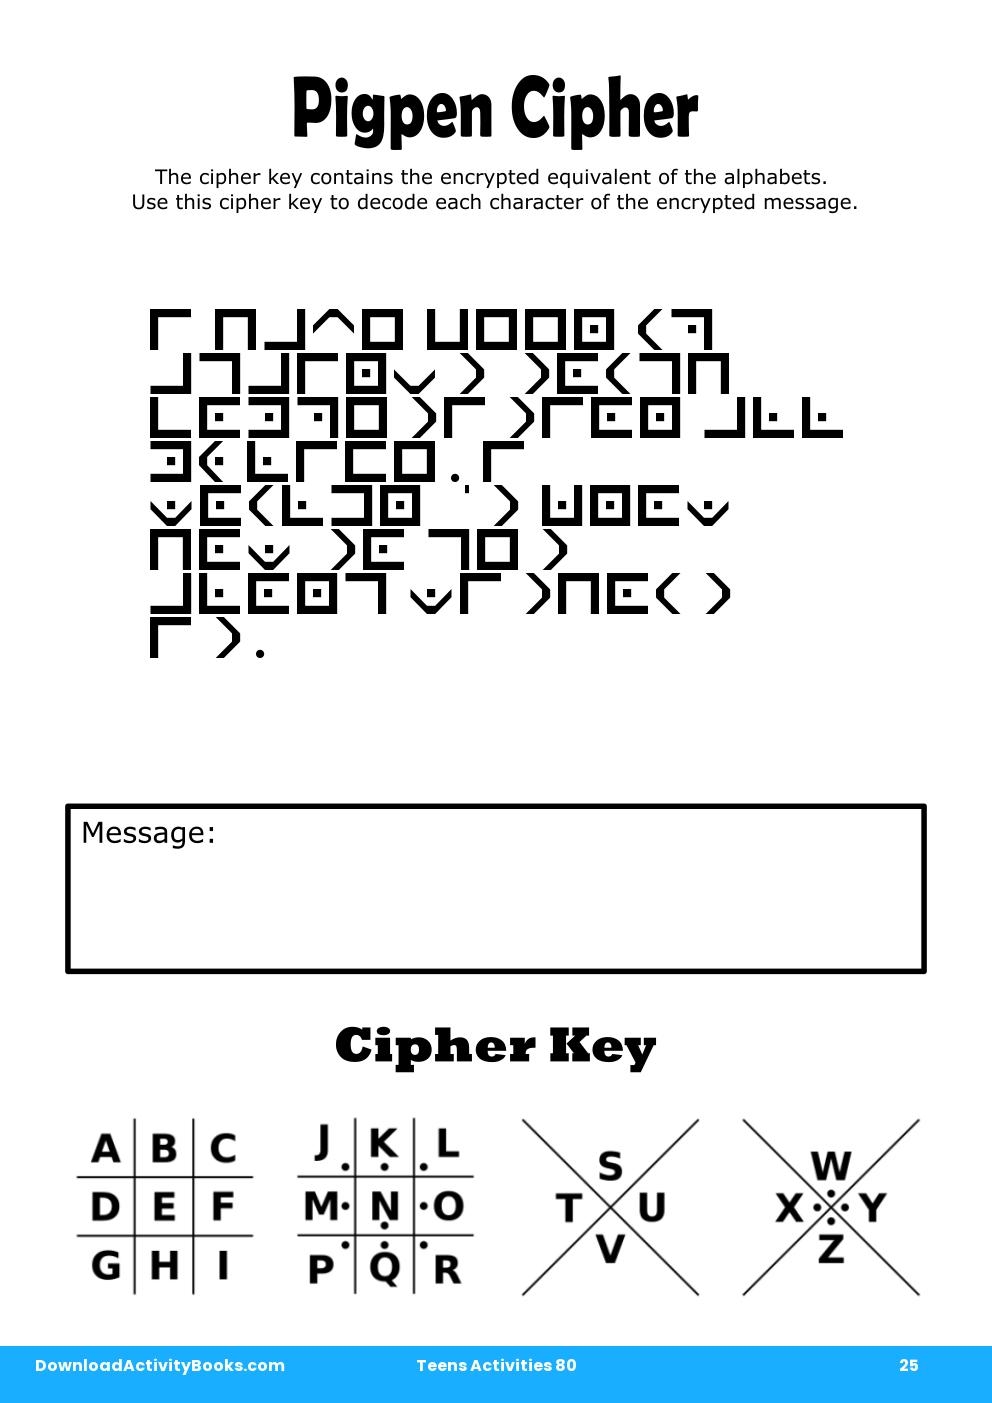 Pigpen Cipher in Teens Activities 80